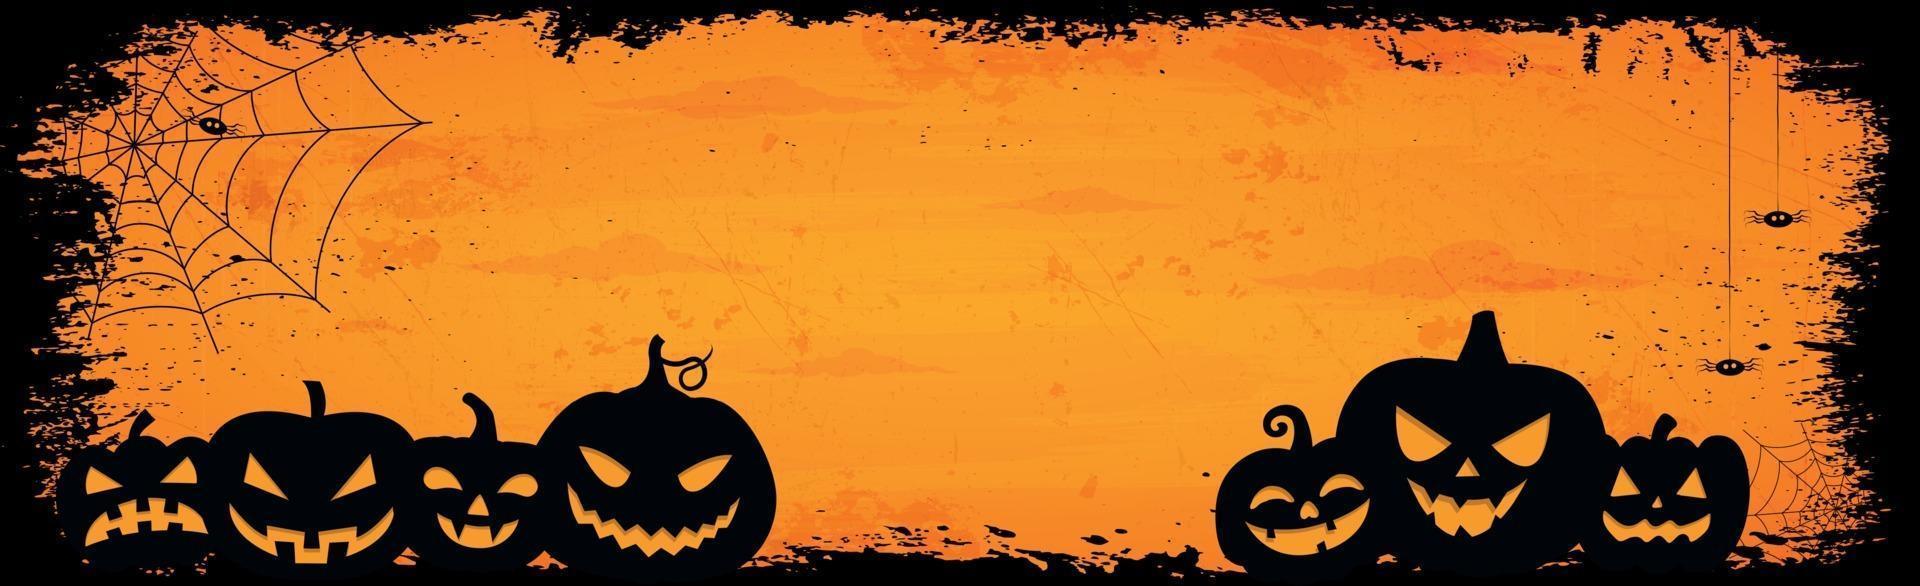 fond de halloween orange sombre effrayant - vecteur